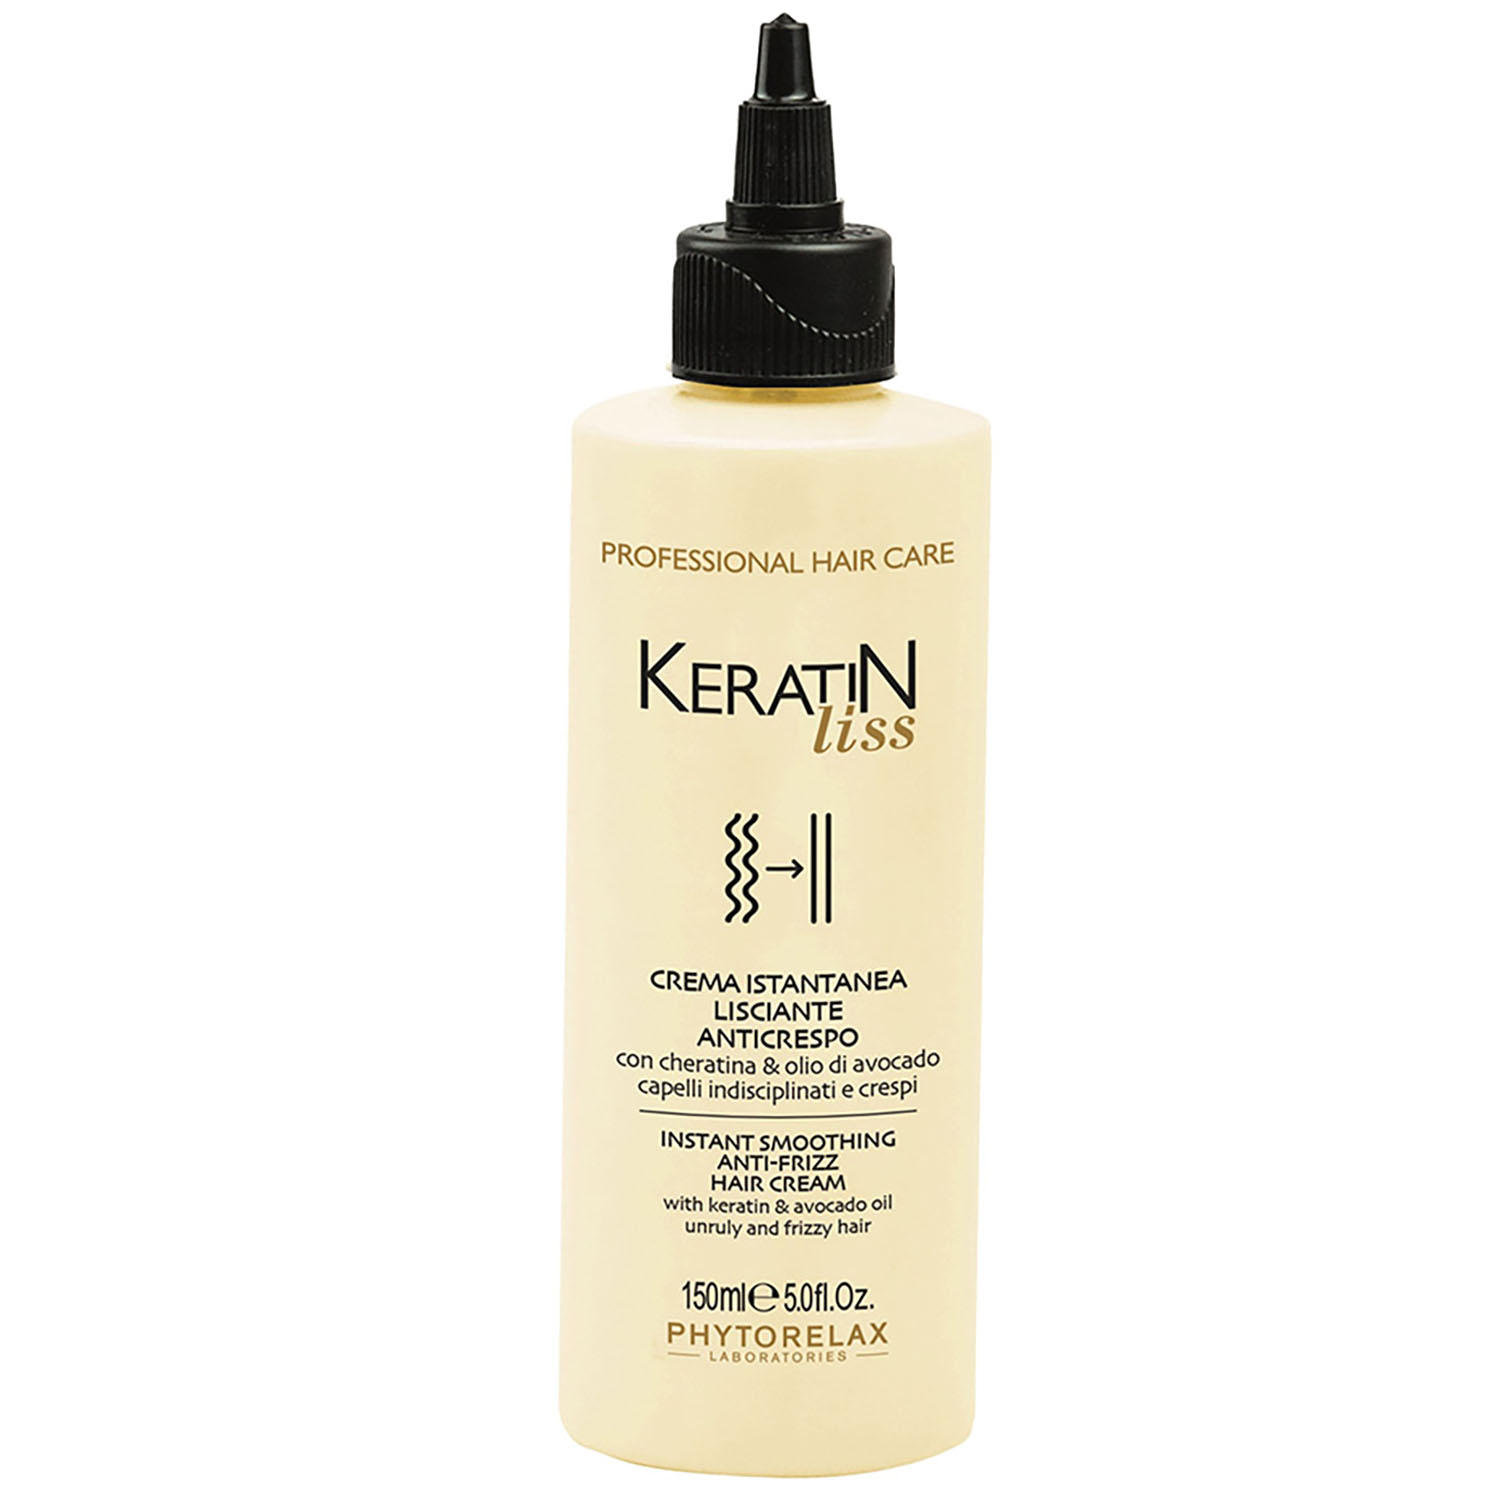 Крем Phytorelax Laboratories Keratin Liss Instant Smoothing Anti-Frizz Hair Cream для розгладження волосся 150 мл - фото 1